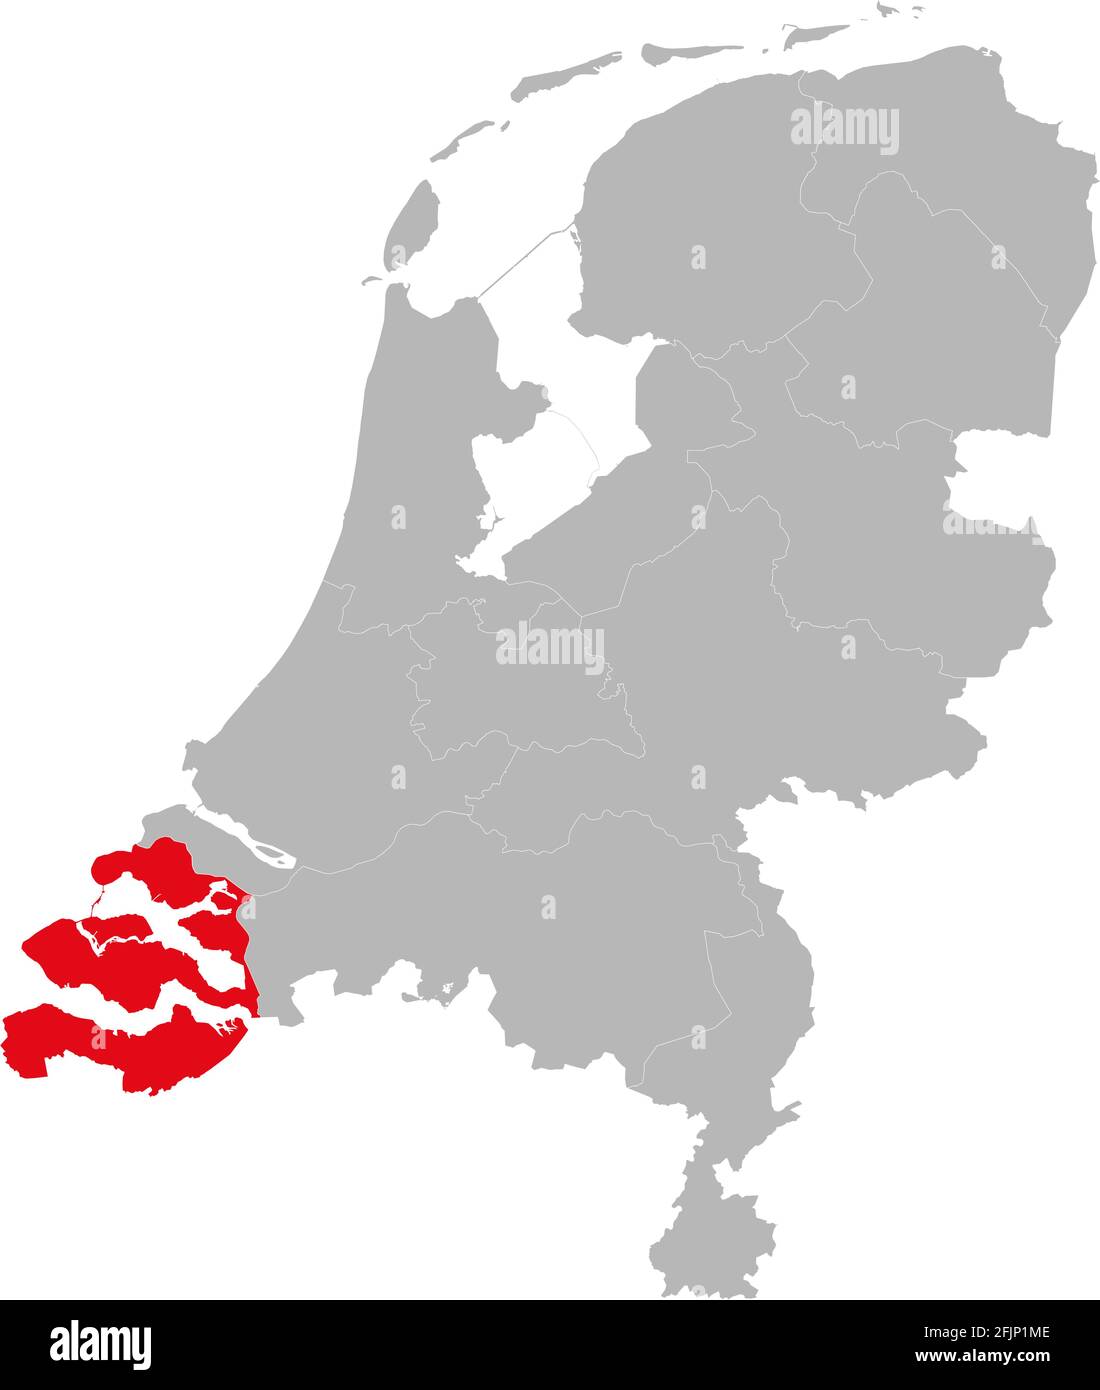 Provinz Zeeland niederlande auf der politischen Landkarte der niederlande hervorgehoben. Hintergründe, Diagramme, Geschäftskonzepte. Stock Vektor